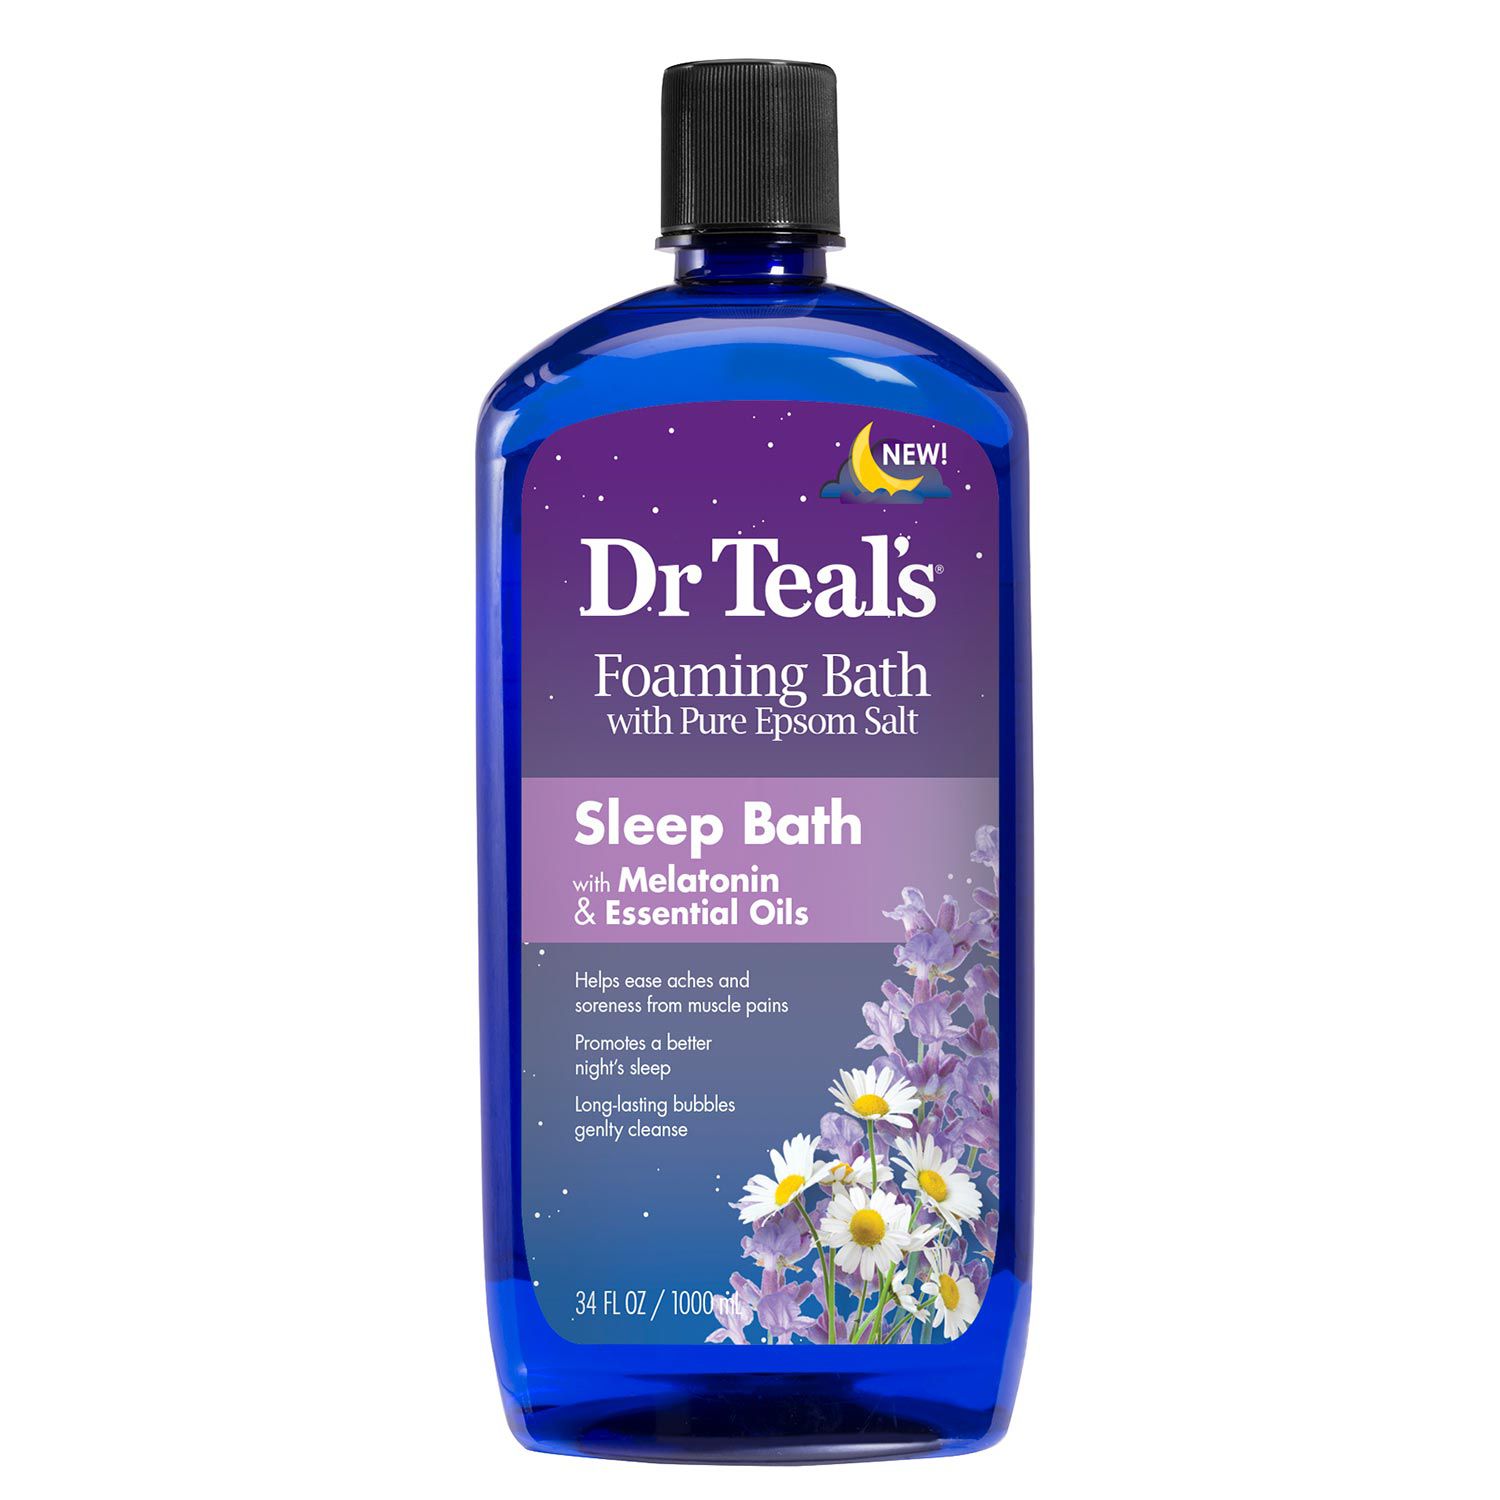 Dr Teal's Foaming Bath with Pure Epsom Salt, Sleep Bath with Melatonin